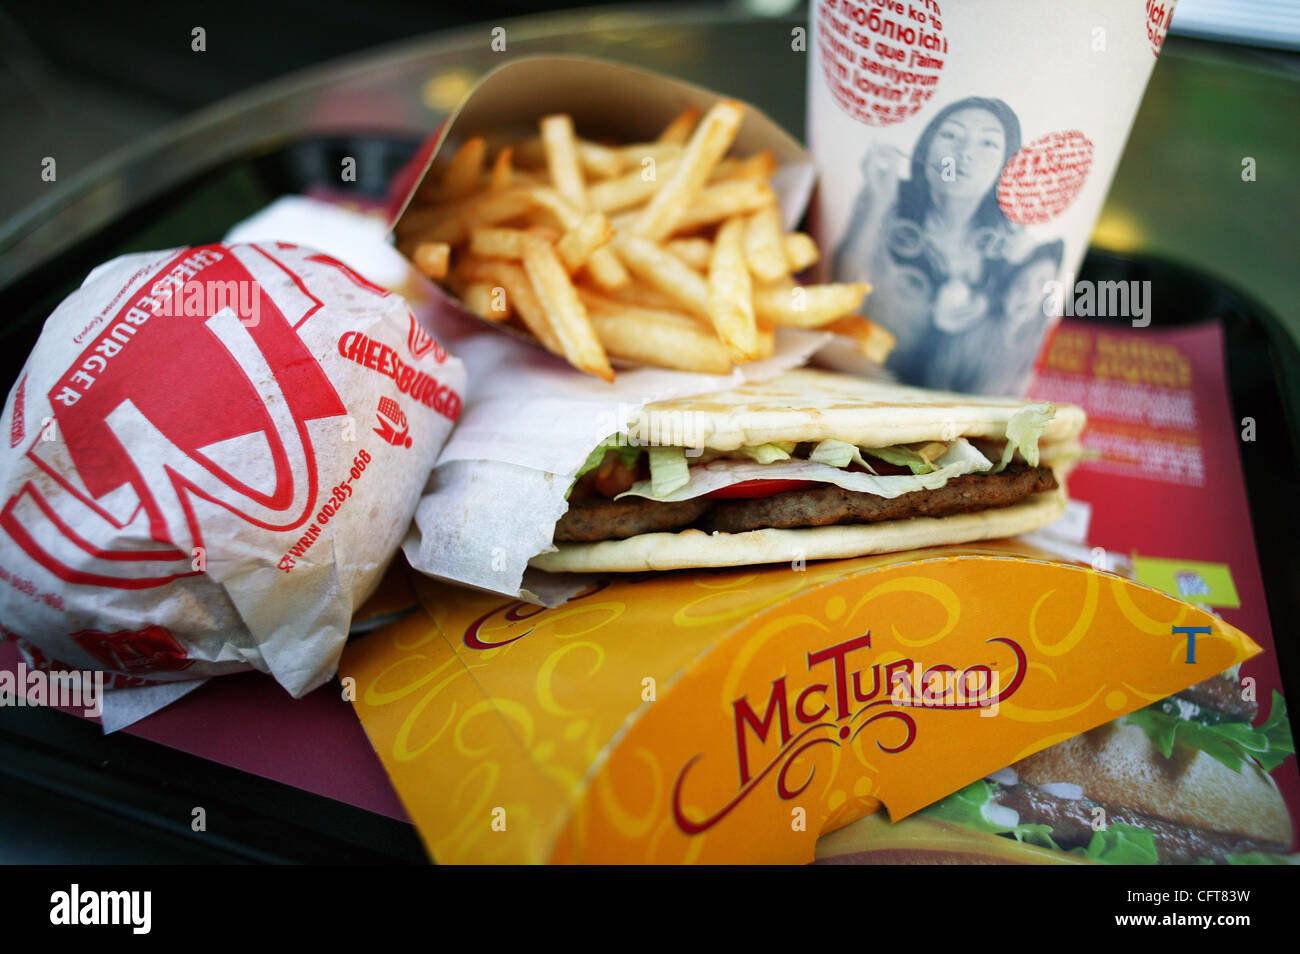 McDonald's-Menüpunkt zeigt eine Istanbul McDonald Restaurant Dezember 14, 2006. Obwohl der Big Mac Nummer eins Verkäufer bleibt, entwickelt McDonalds kulturelle Menüpunkte für regionalen Geschmack, wie diese McTurco Sandwich in McDonald's Restaurants in der ganzen Türkei angeboten. Die McTurco ist Stockfoto